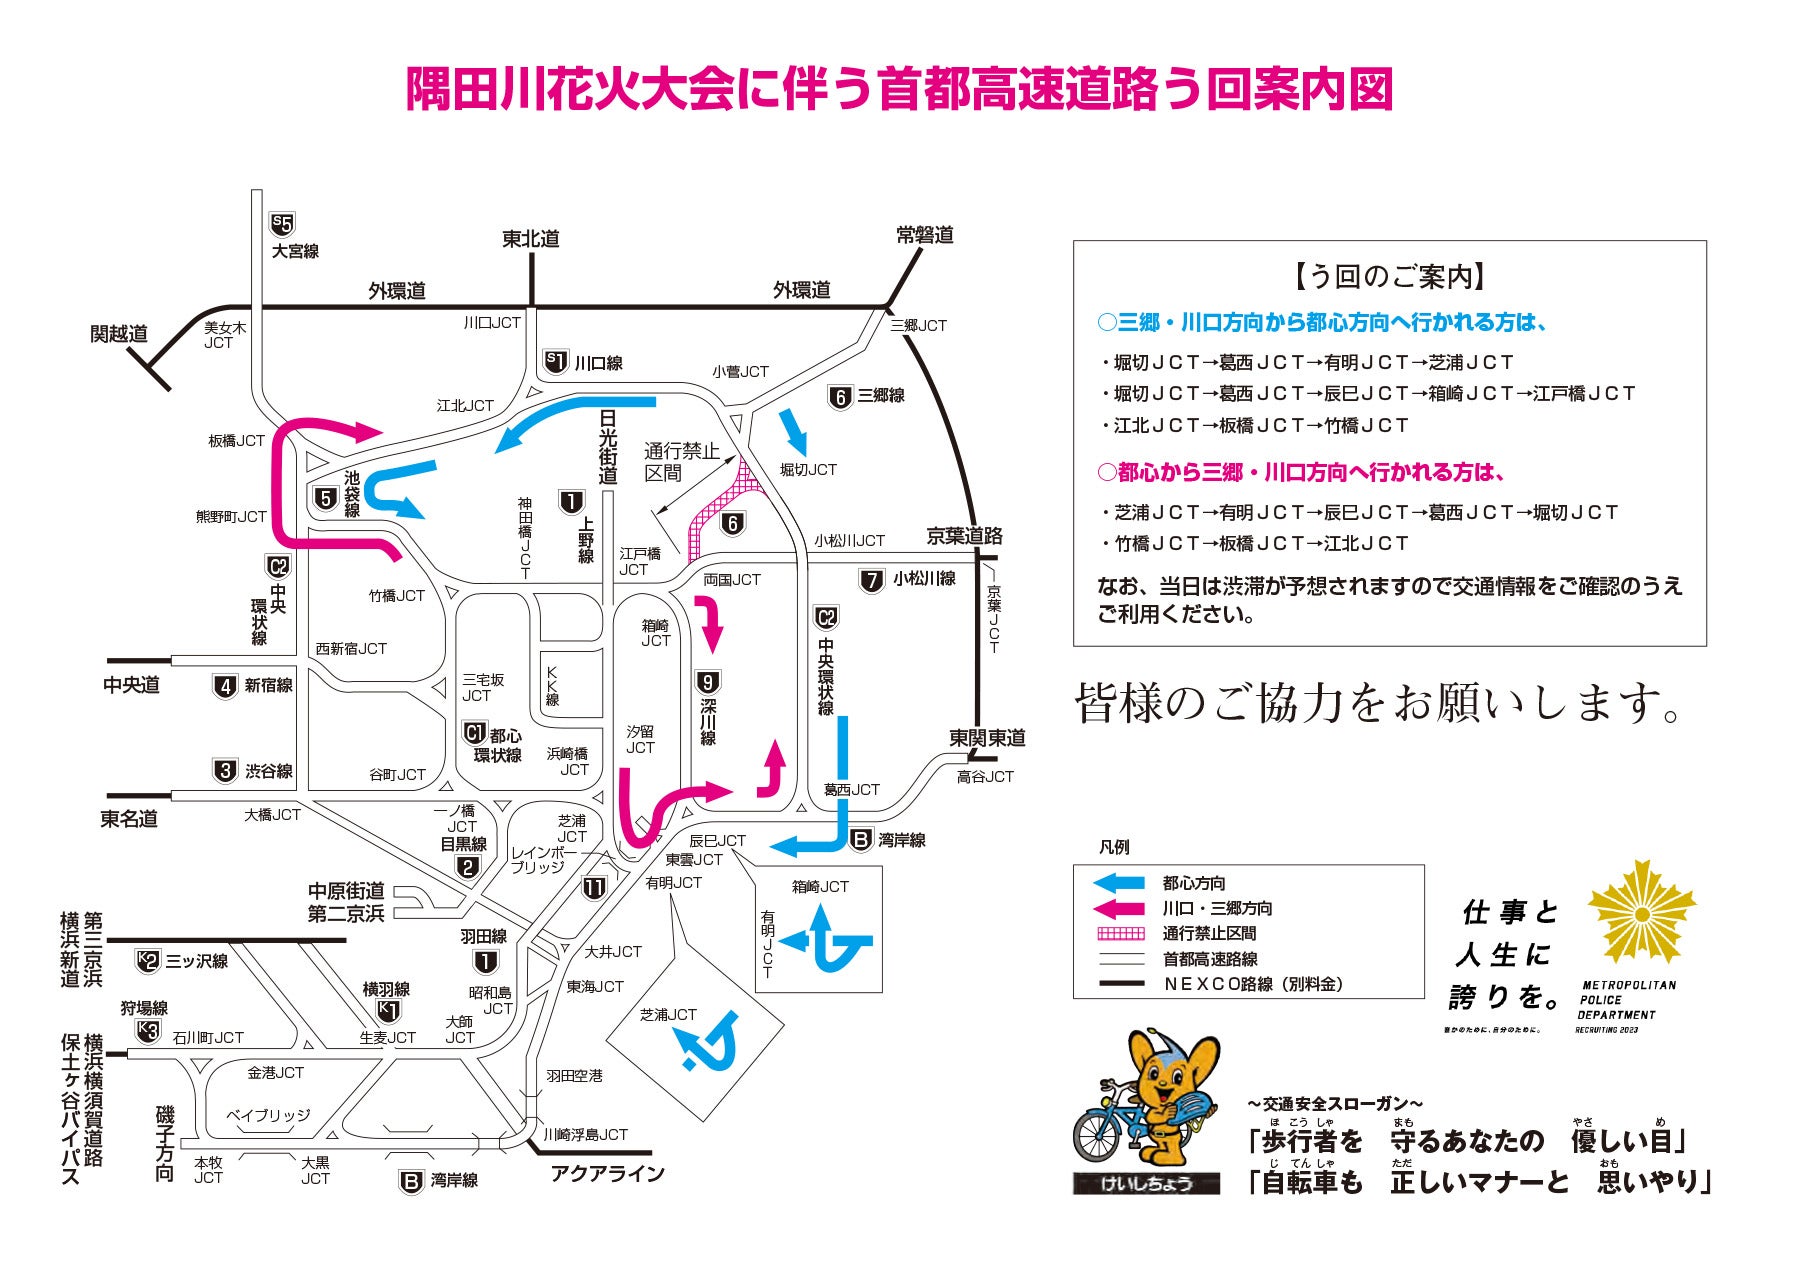 隅田川花火大会による交通規制時の首都高速の迂回路